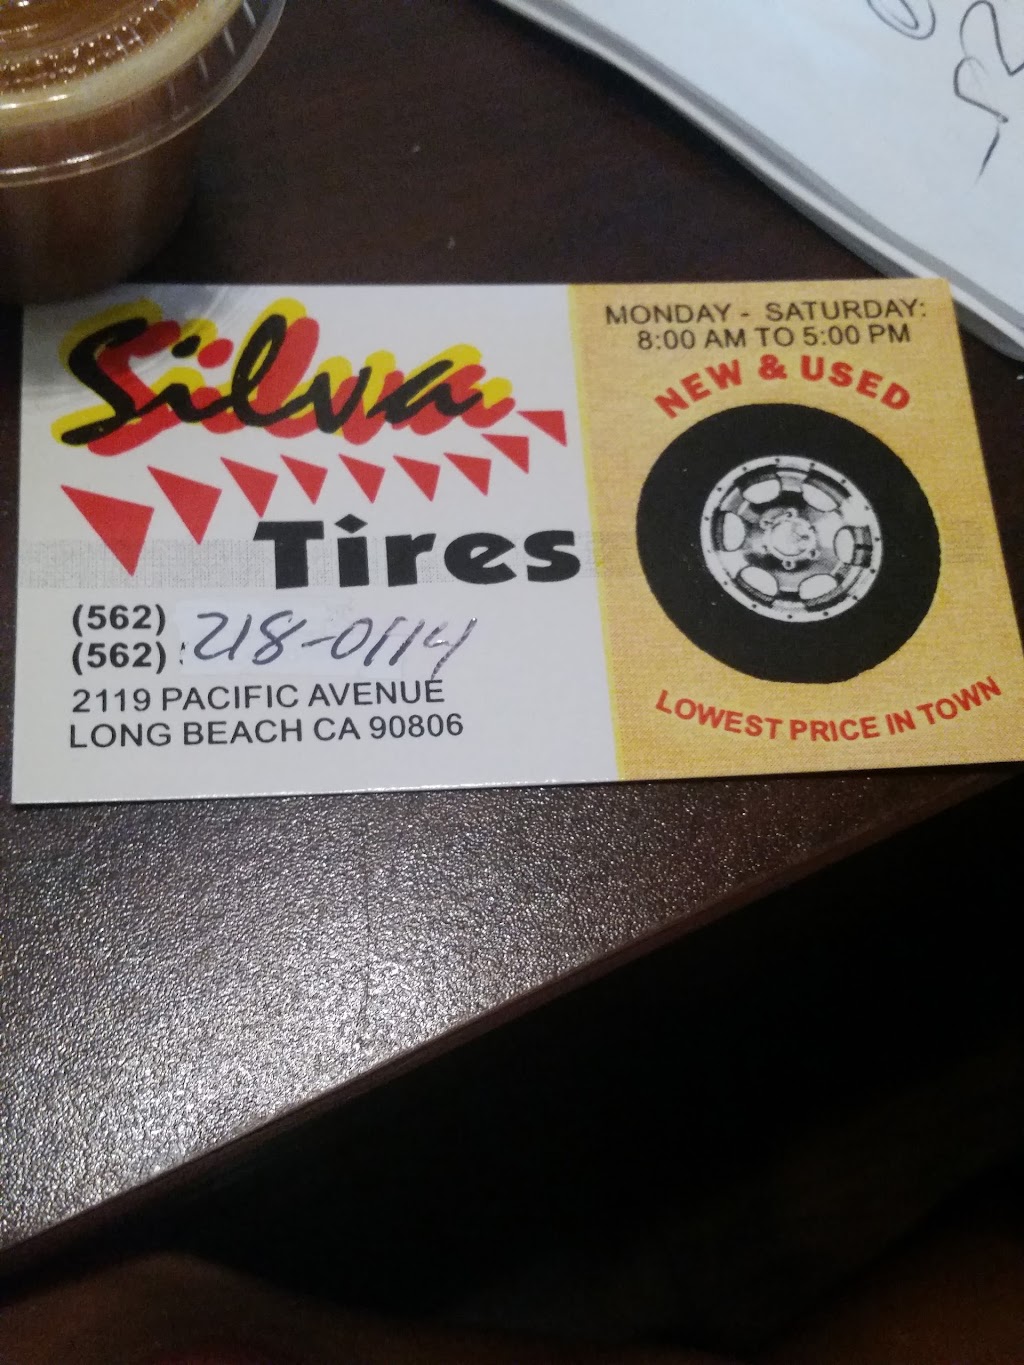 Silvas Tires | 2119 Pacific Ave, Long Beach, CA 90806 | Phone: (562) 218-0114